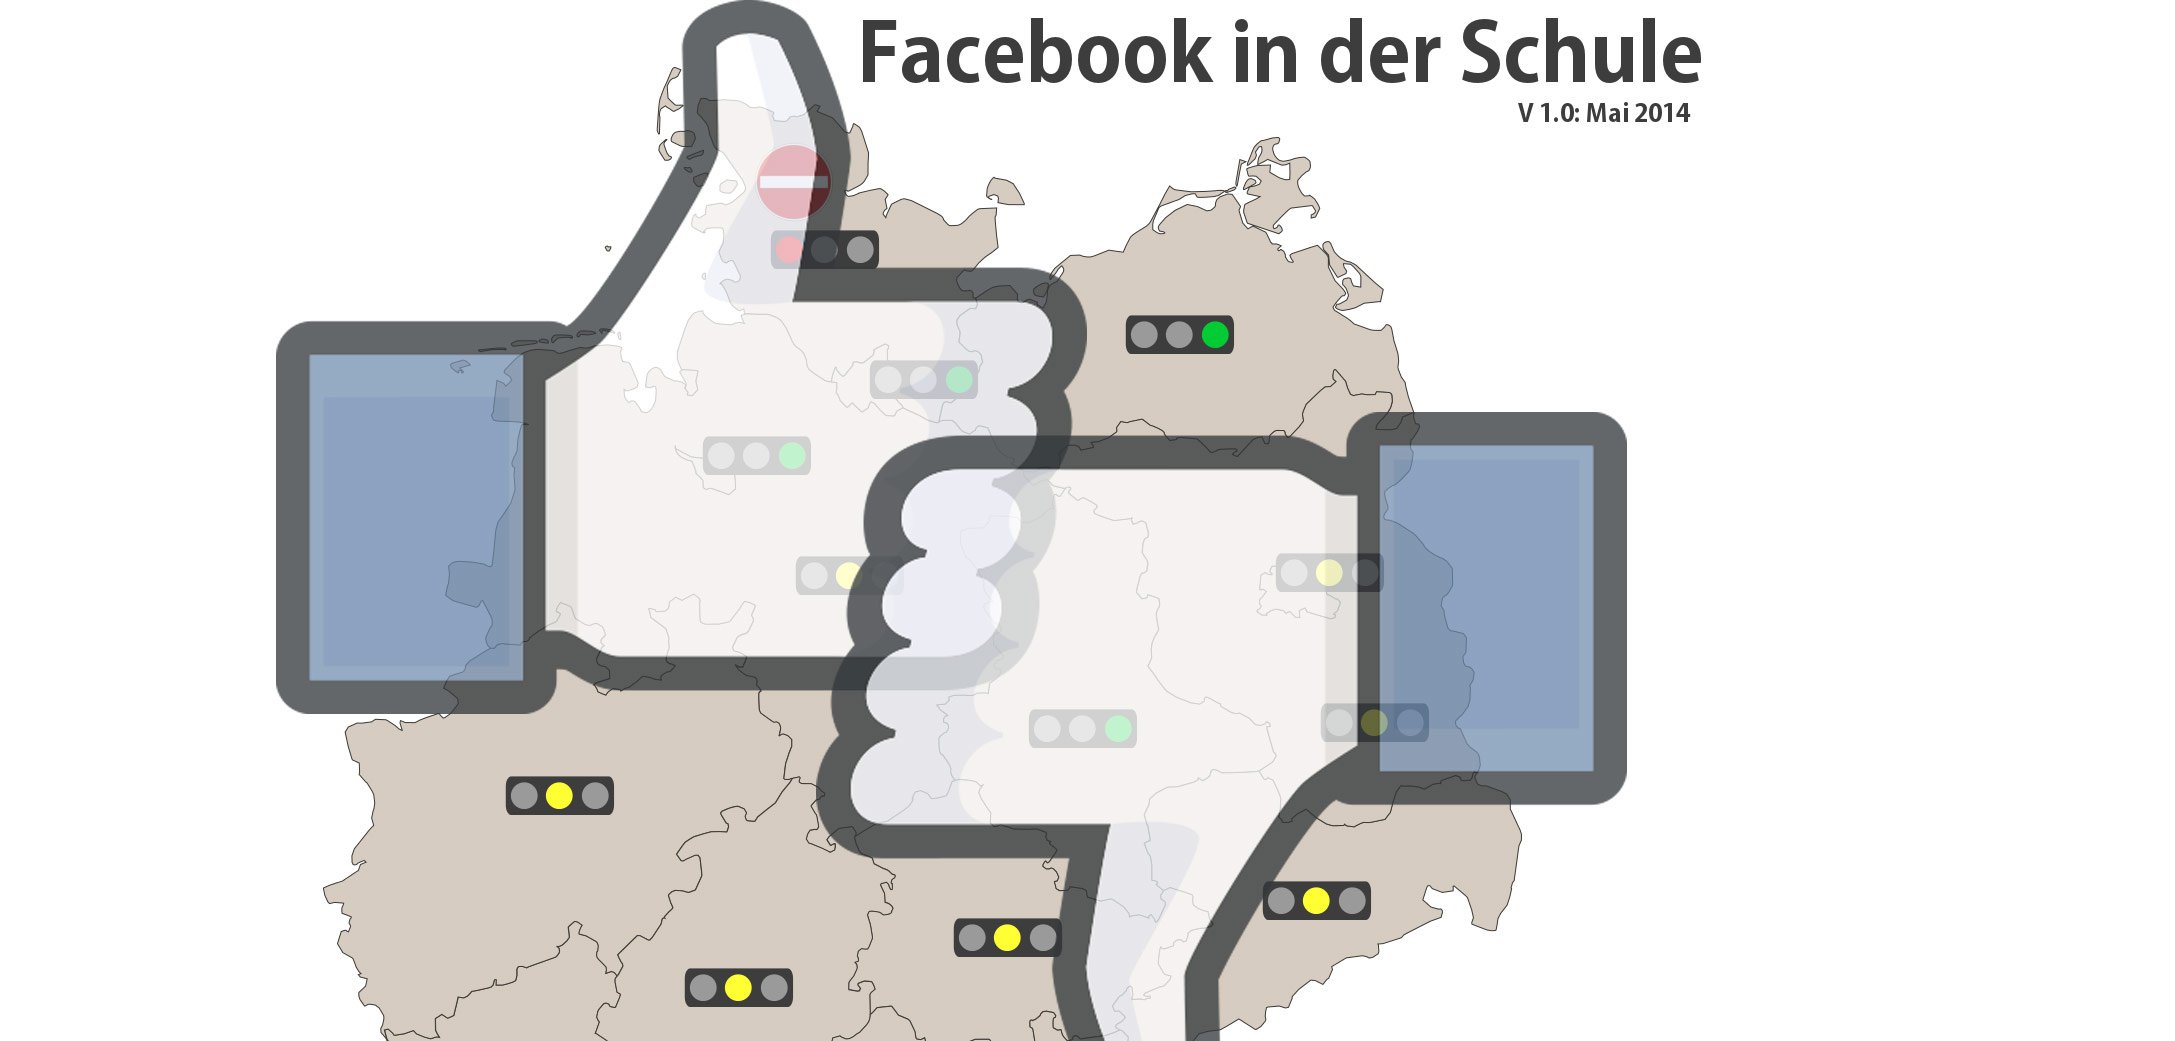 Facebook Verbot in der Schule: Ist Facebook für die Schule erlaubt oder verboten? 1